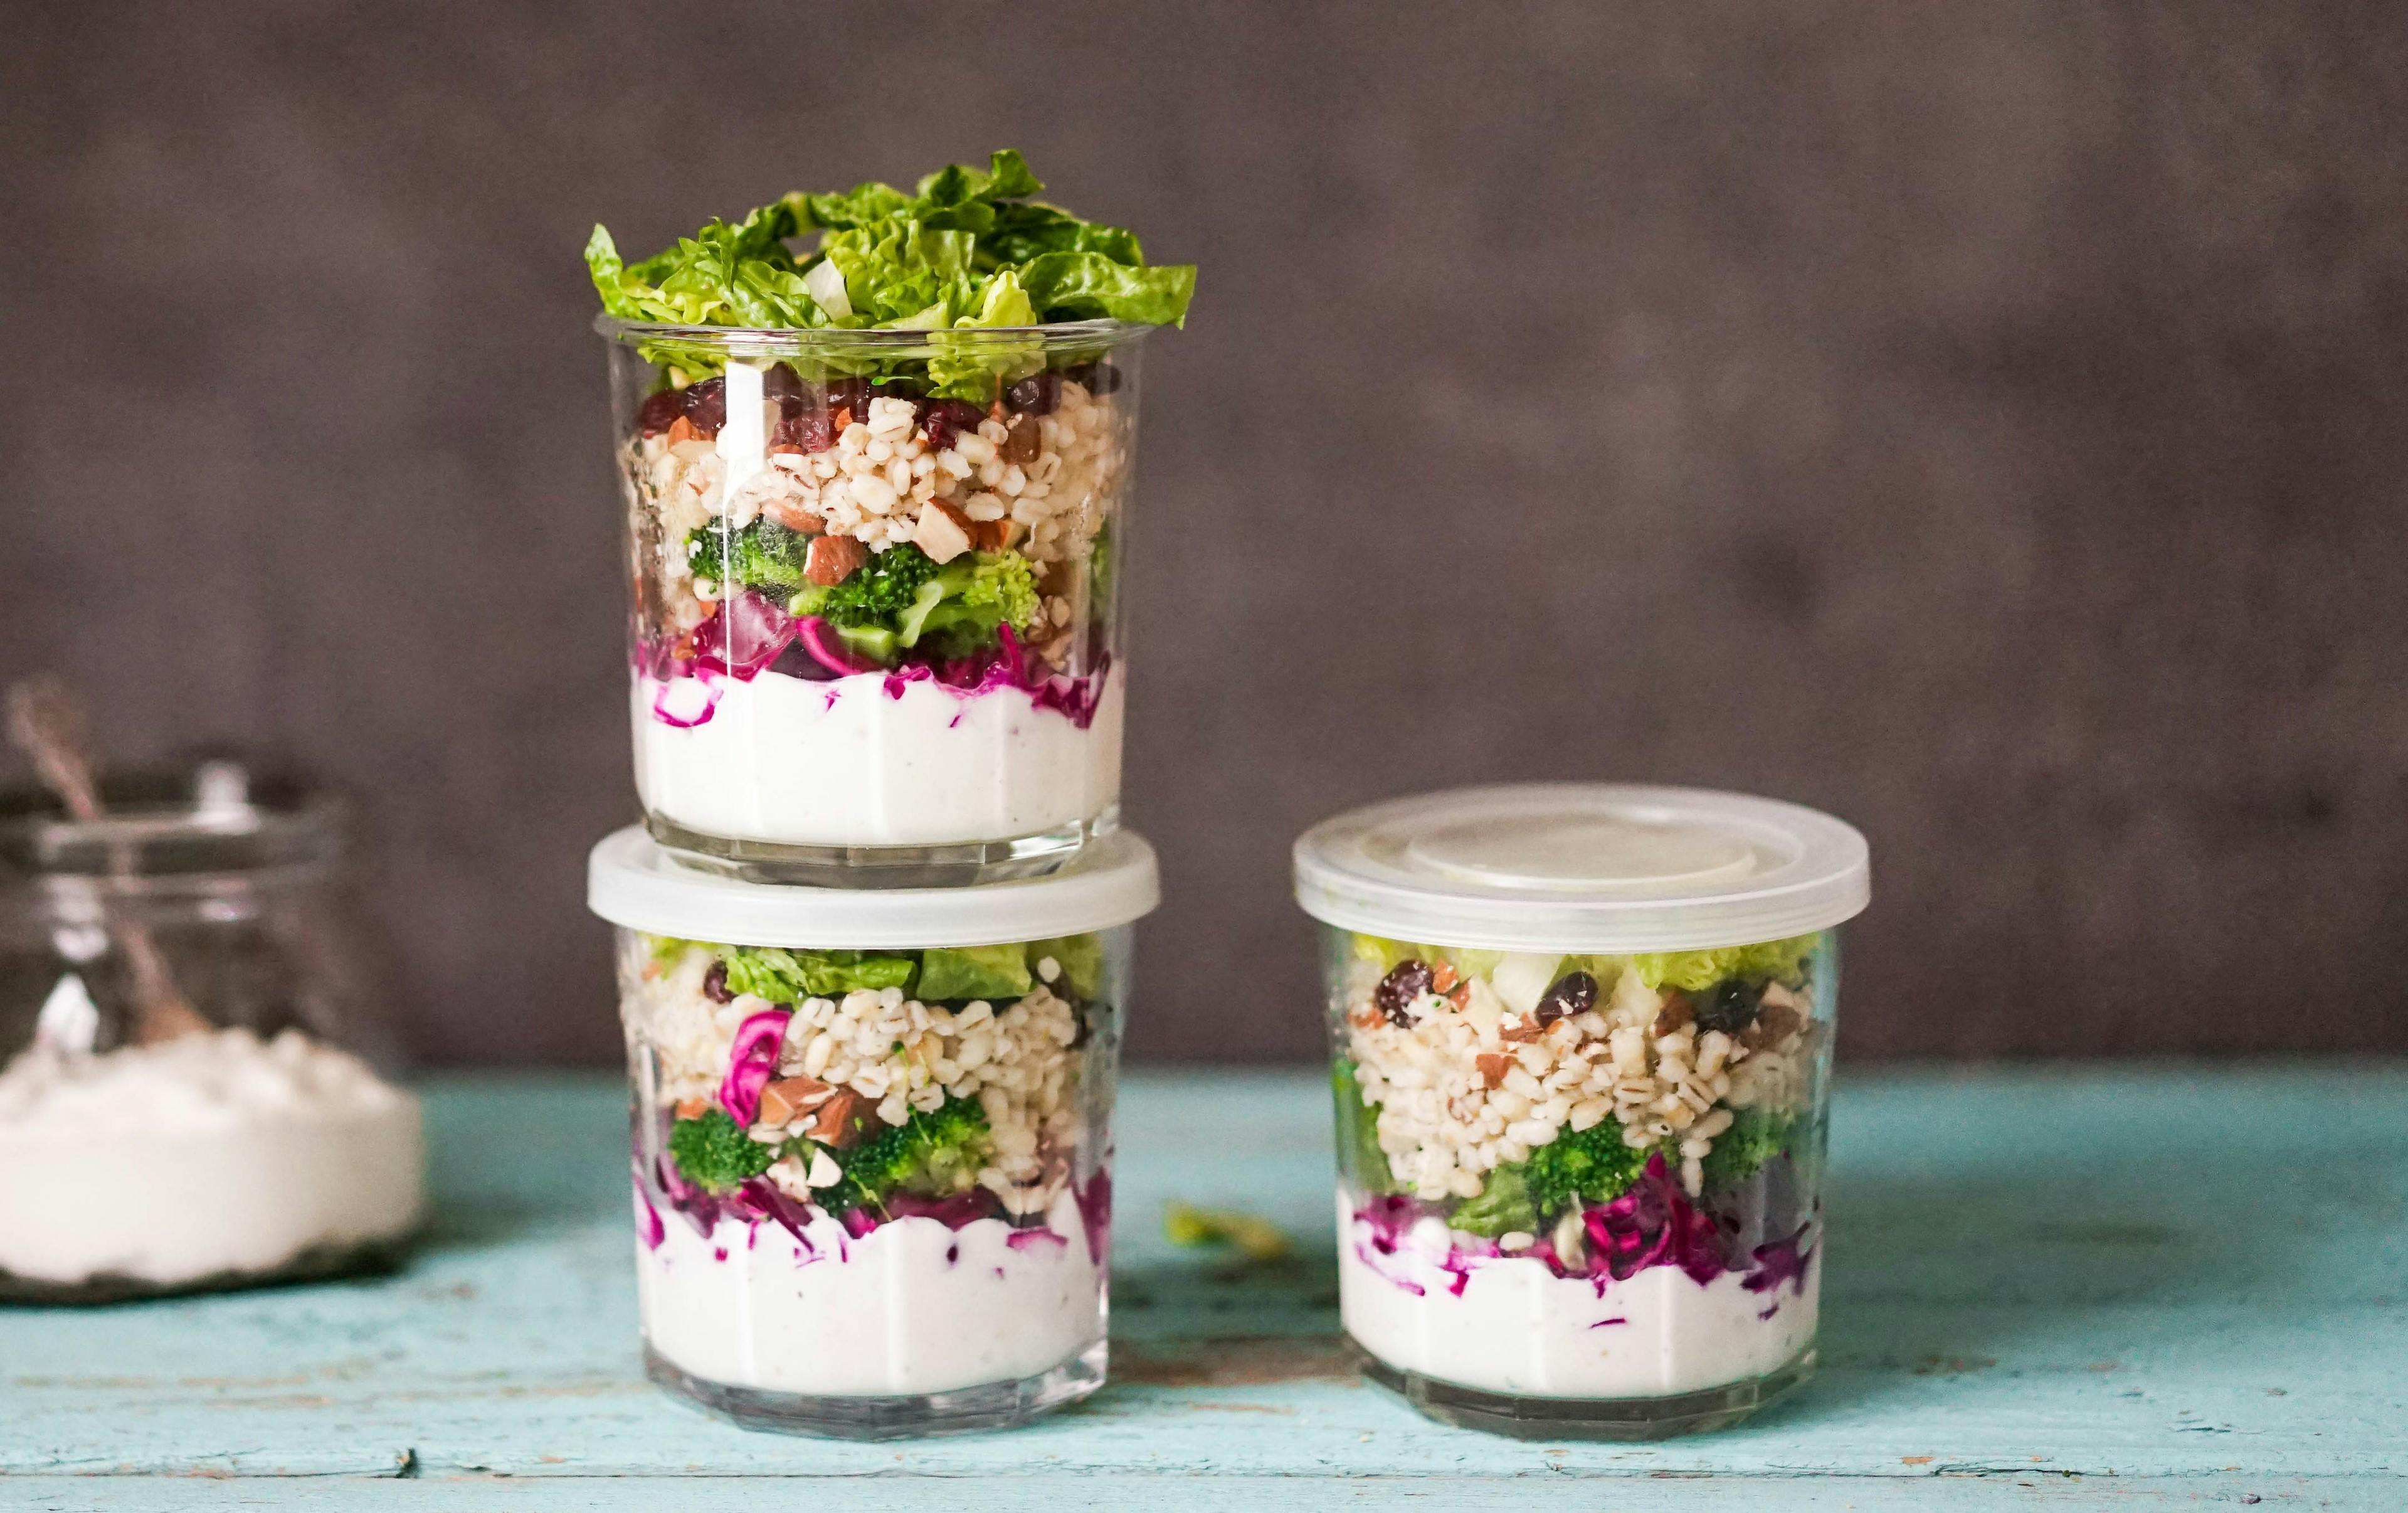 Salat på glass- byggrynsalat